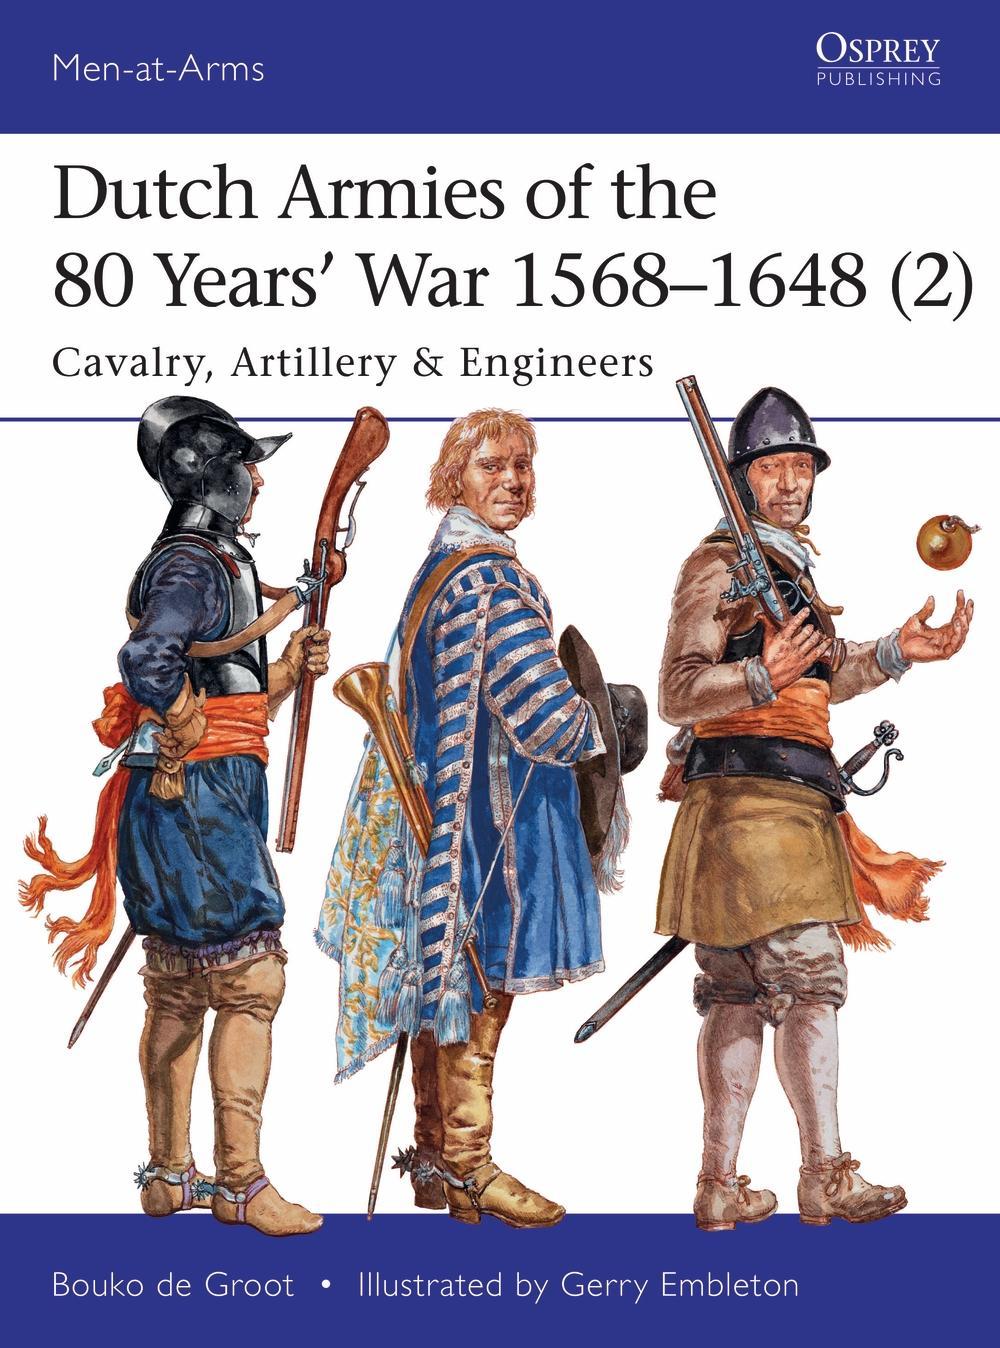 Dutch Armies of the 80 Years' War 1568-1648 2 - Bouko de Groot